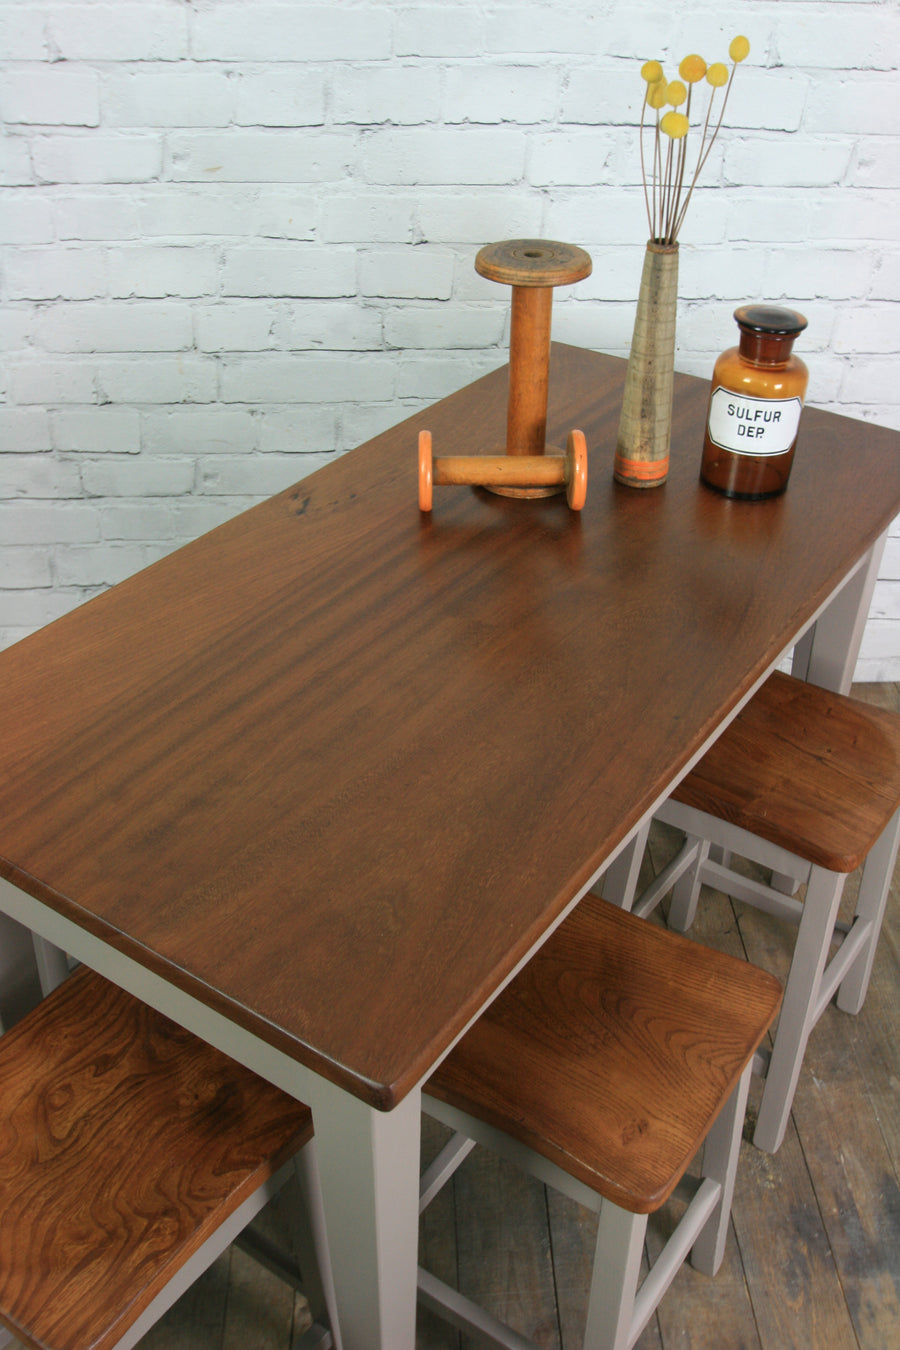 Vintage painted school laboratory table & 6 stools